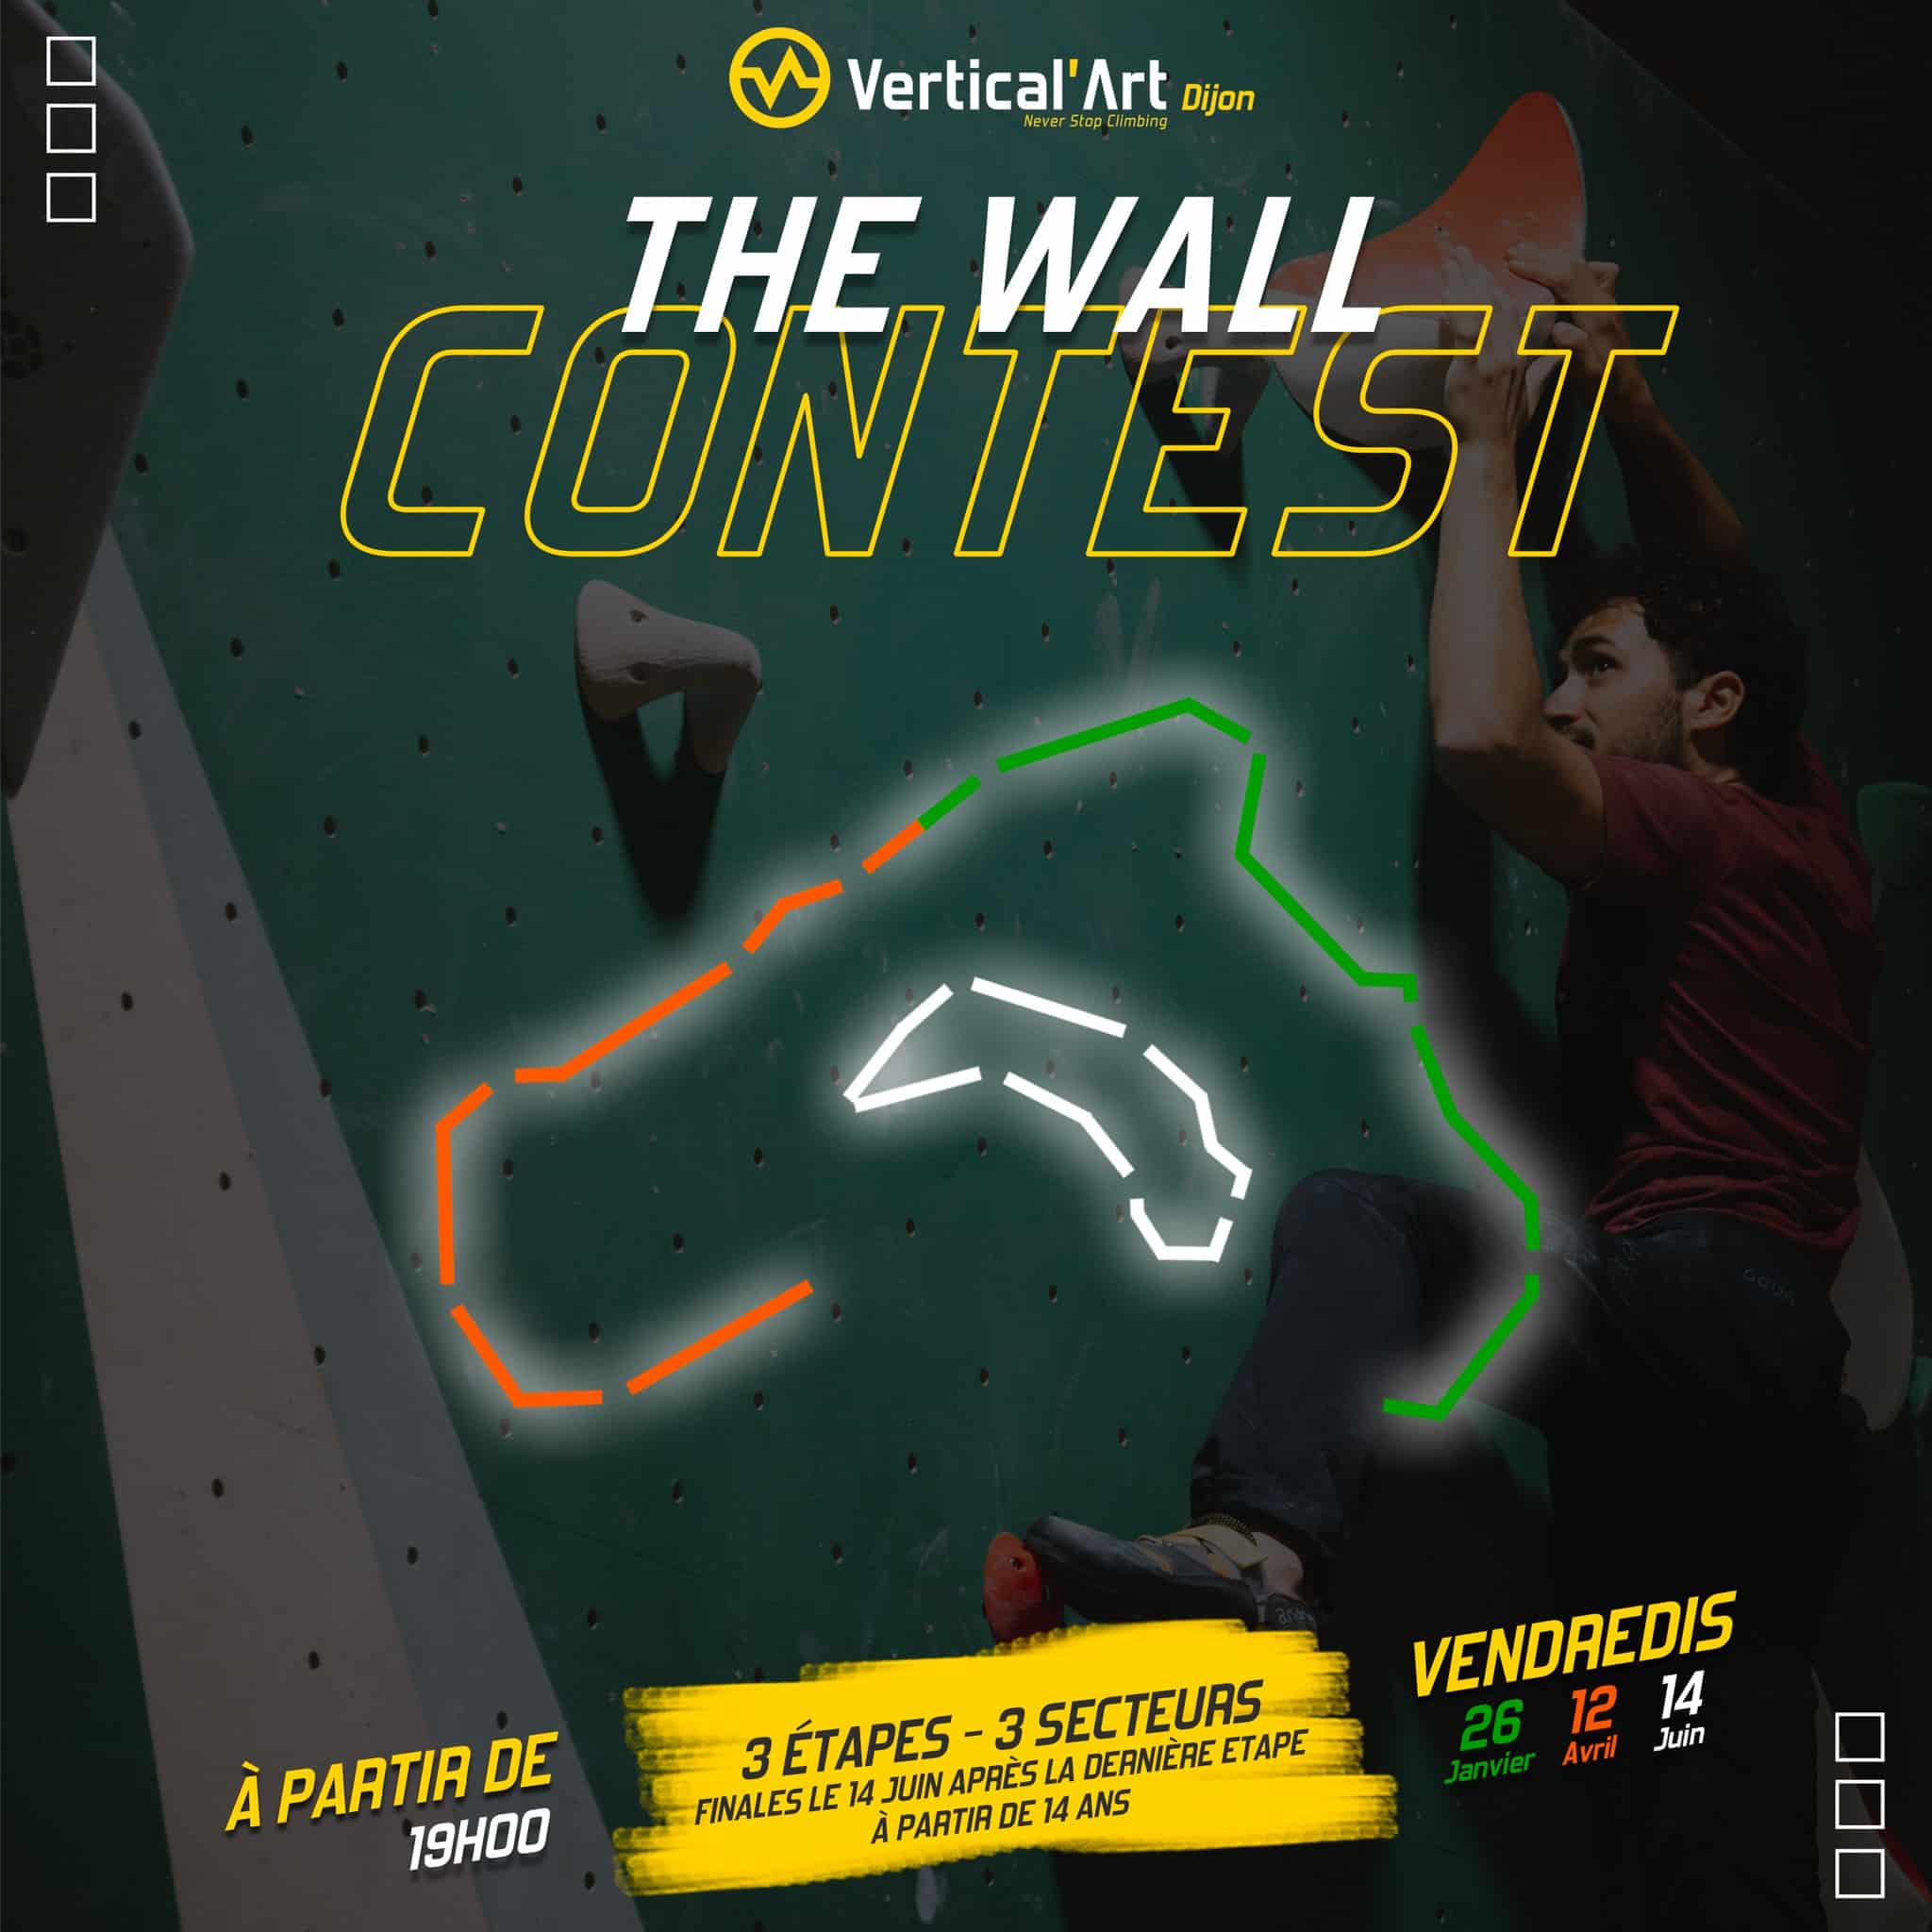 Wall contest #1, contest en 3 étapes avec finales à Vertical'Art Dijon